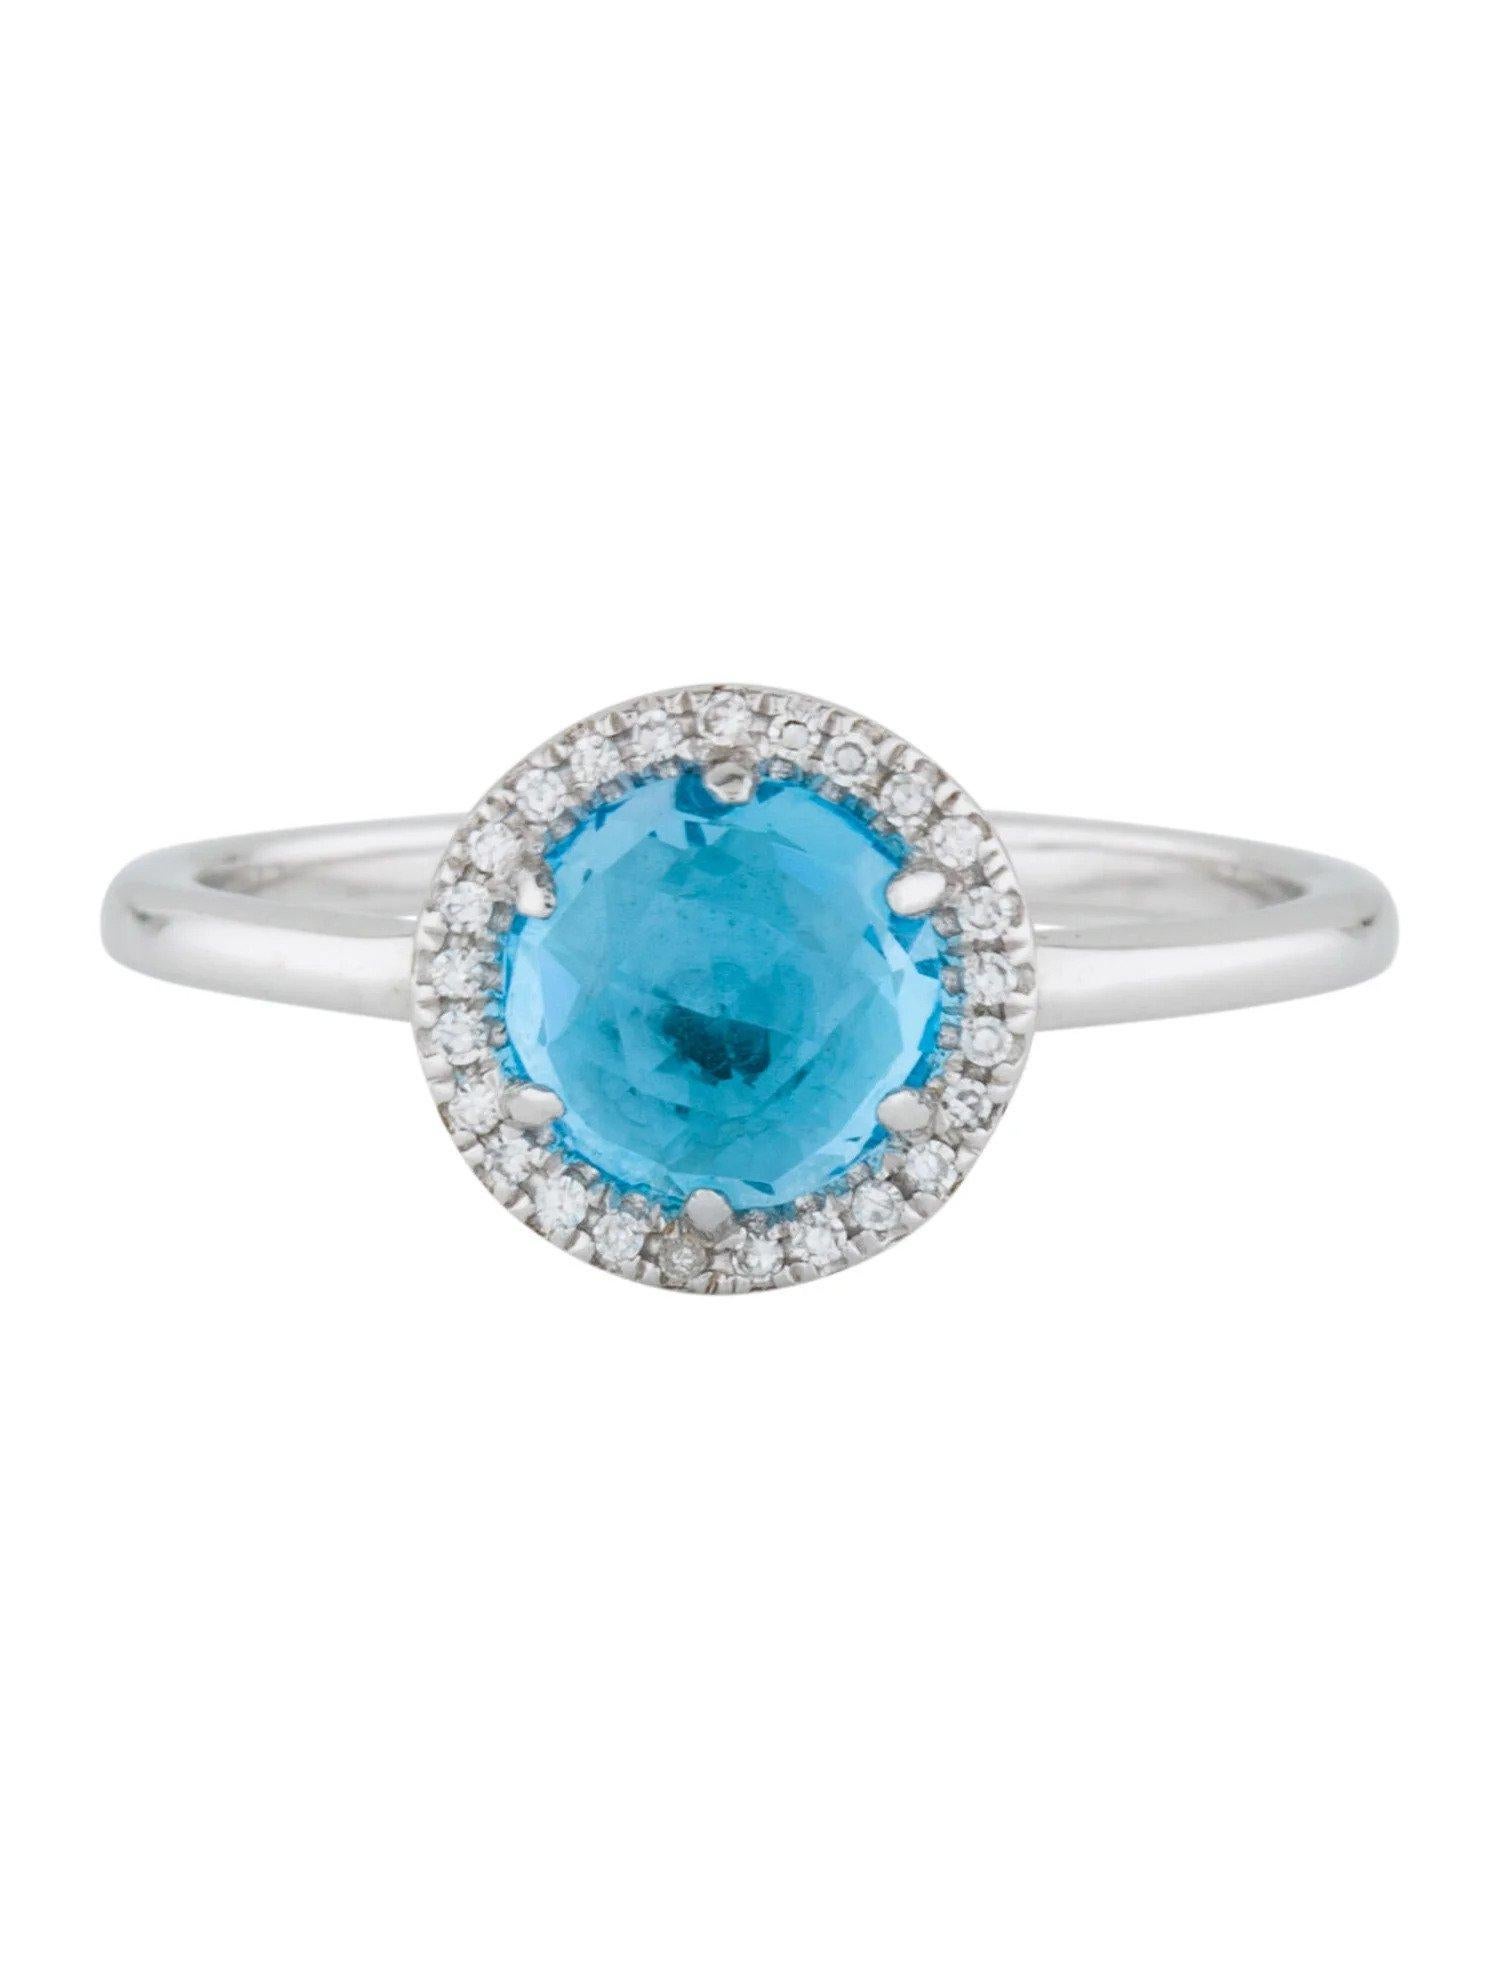 Cette bague suisse en topaze bleue et diamant est un accessoire étonnant et intemporel qui peut ajouter une touche de glamour et de sophistication à n'importe quelle tenue. 

Cette bague présente une topaze bleue suisse ronde de 1,41 carat, avec un